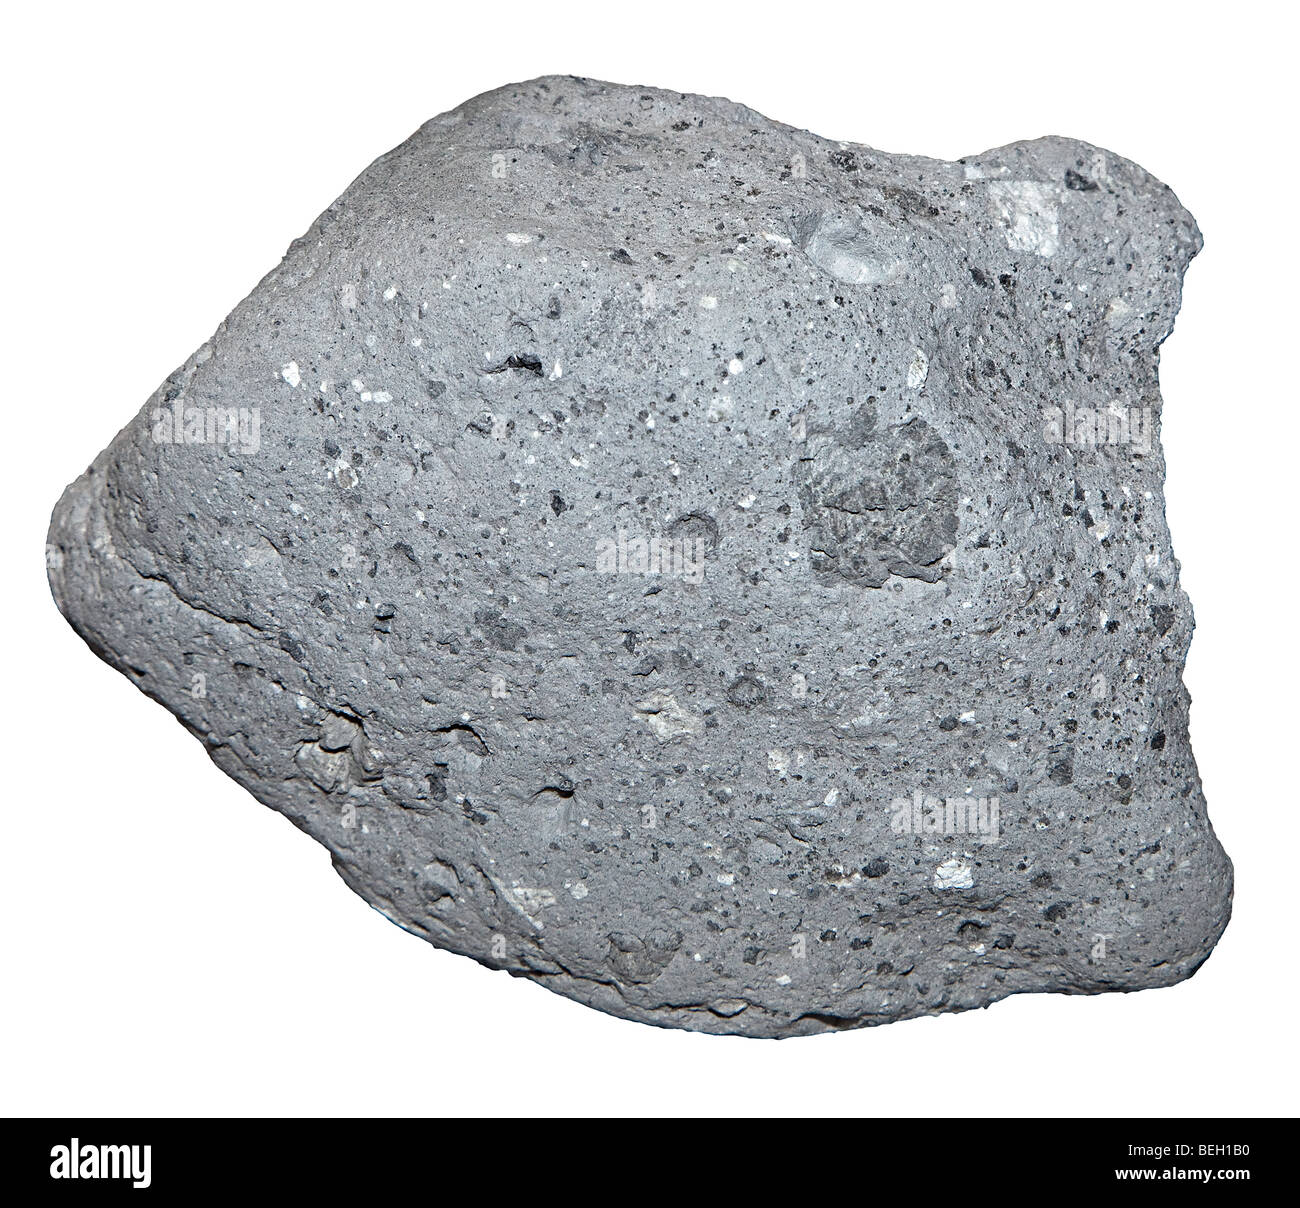 Lune de brèches de l'échantillon de roche Descartes Highlands sur la Lune NASA Space Center Houston Texas USA Banque D'Images